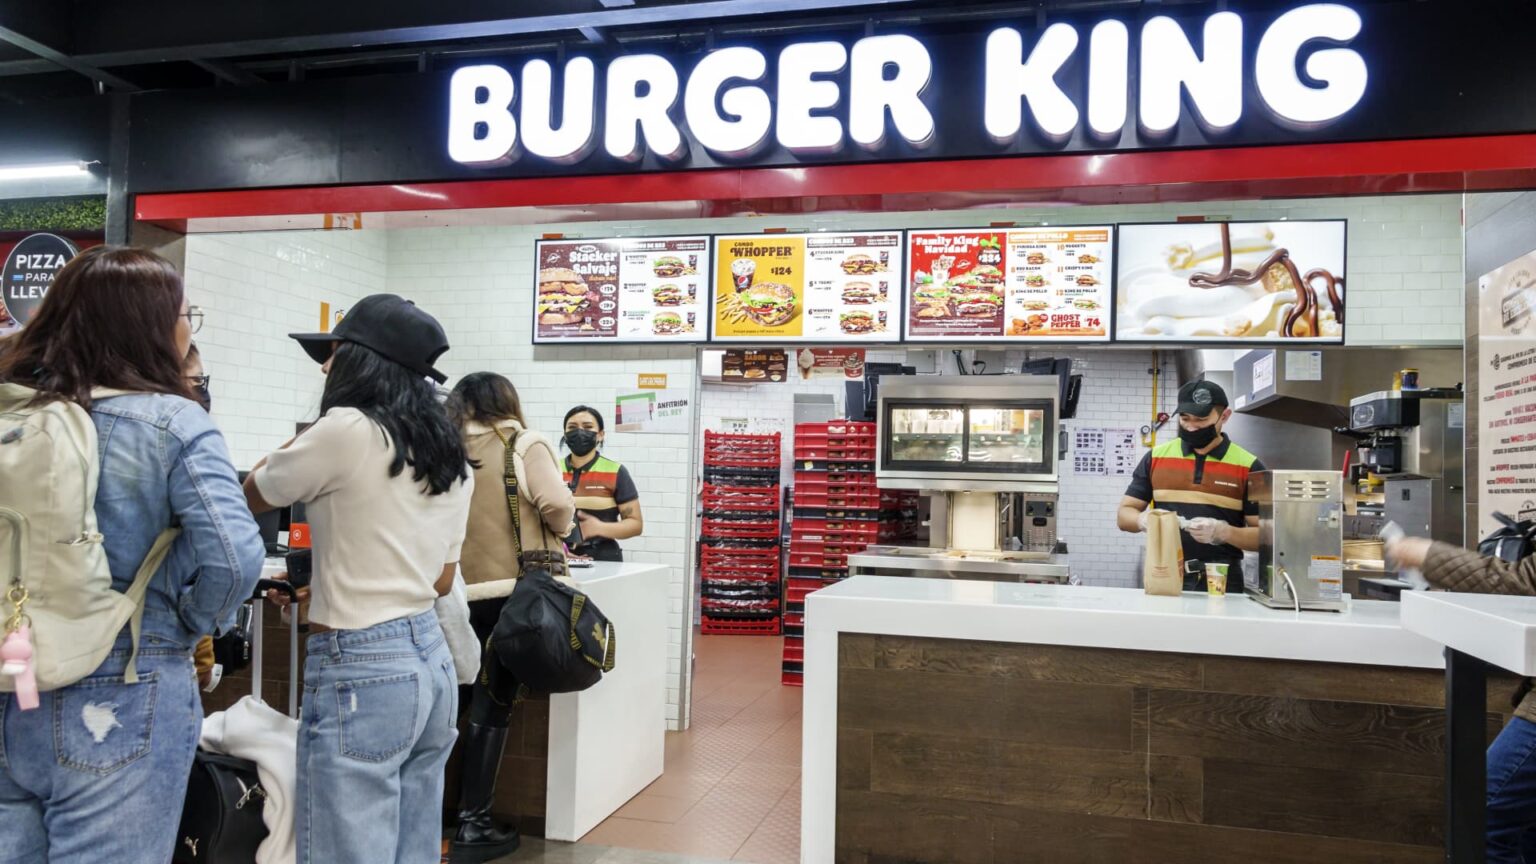 Burger King owner Restaurant Brands buys Carrols, largest U.S. franchisee